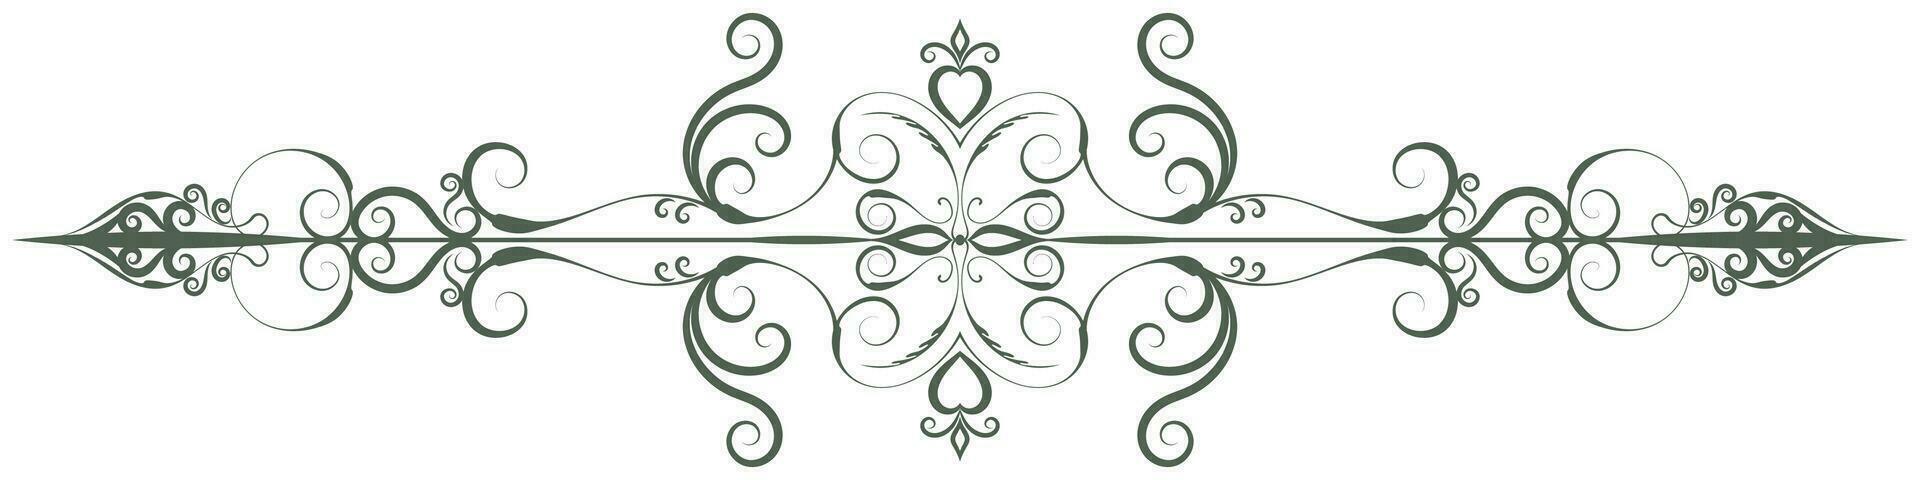 verde vintage linhas barroco rolagem flor divisor vintage estilo para decoração cartões. vetor